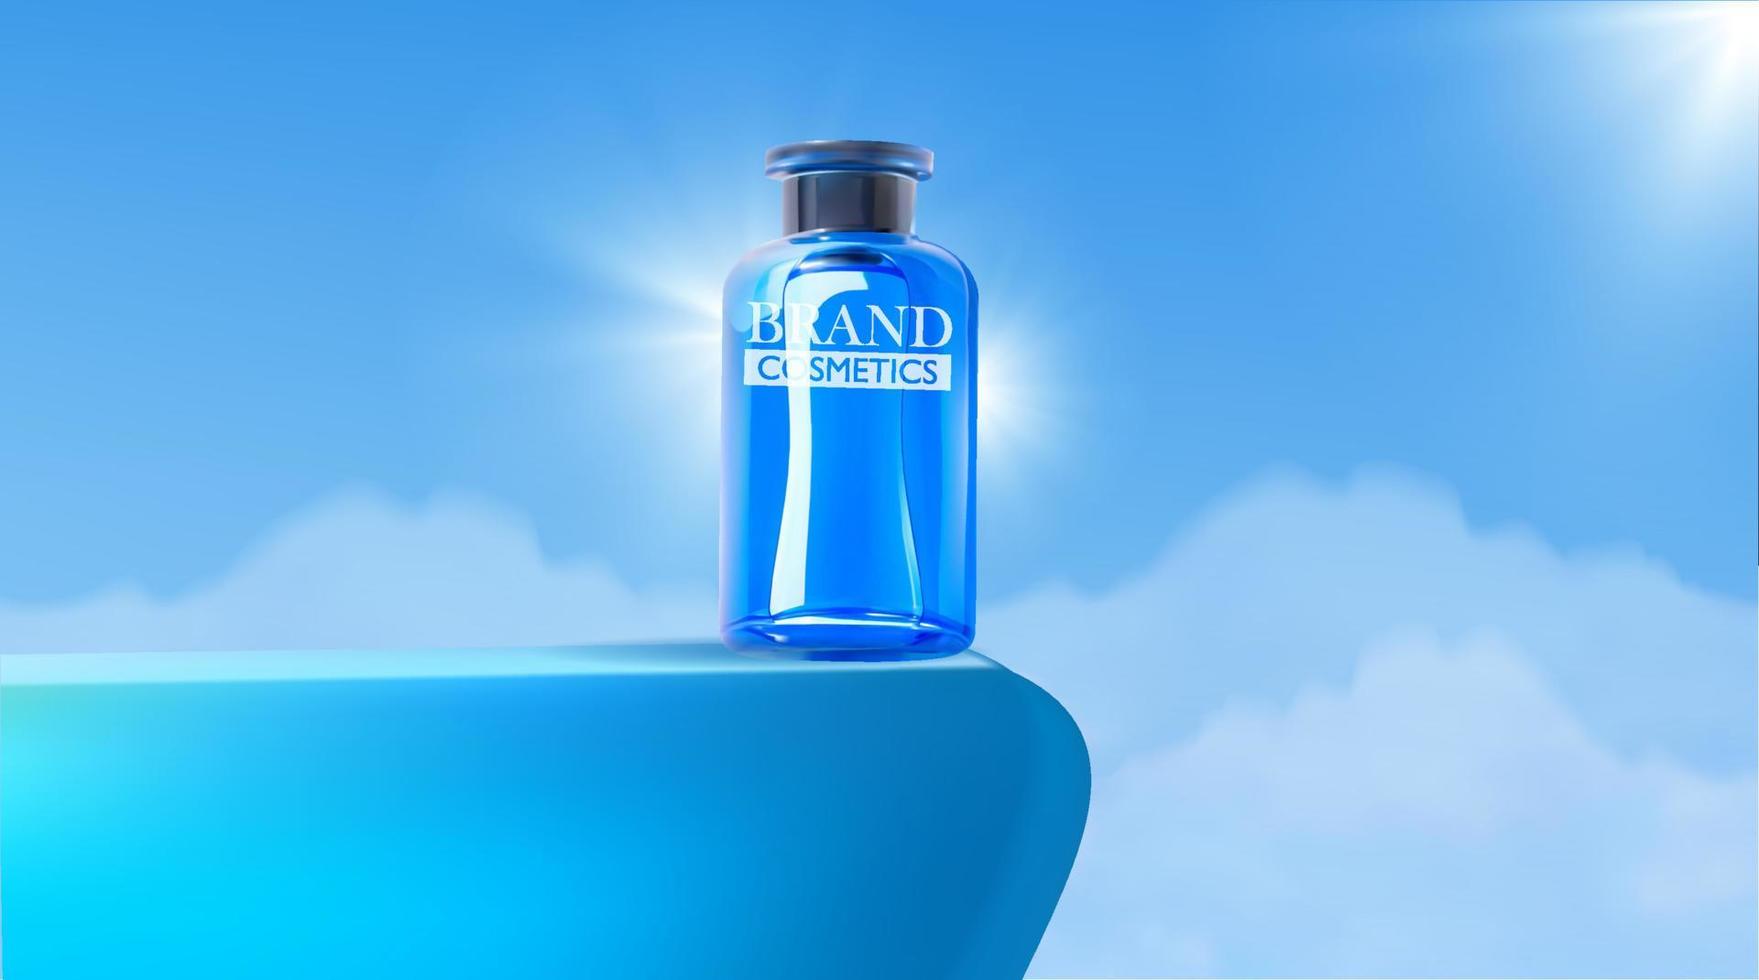 kosmetikproduktanzeigen auf blauem podium mit hintergrund des klaren himmels mit wolken. anzeigeproduktanzeige und websiteschablone. vektor